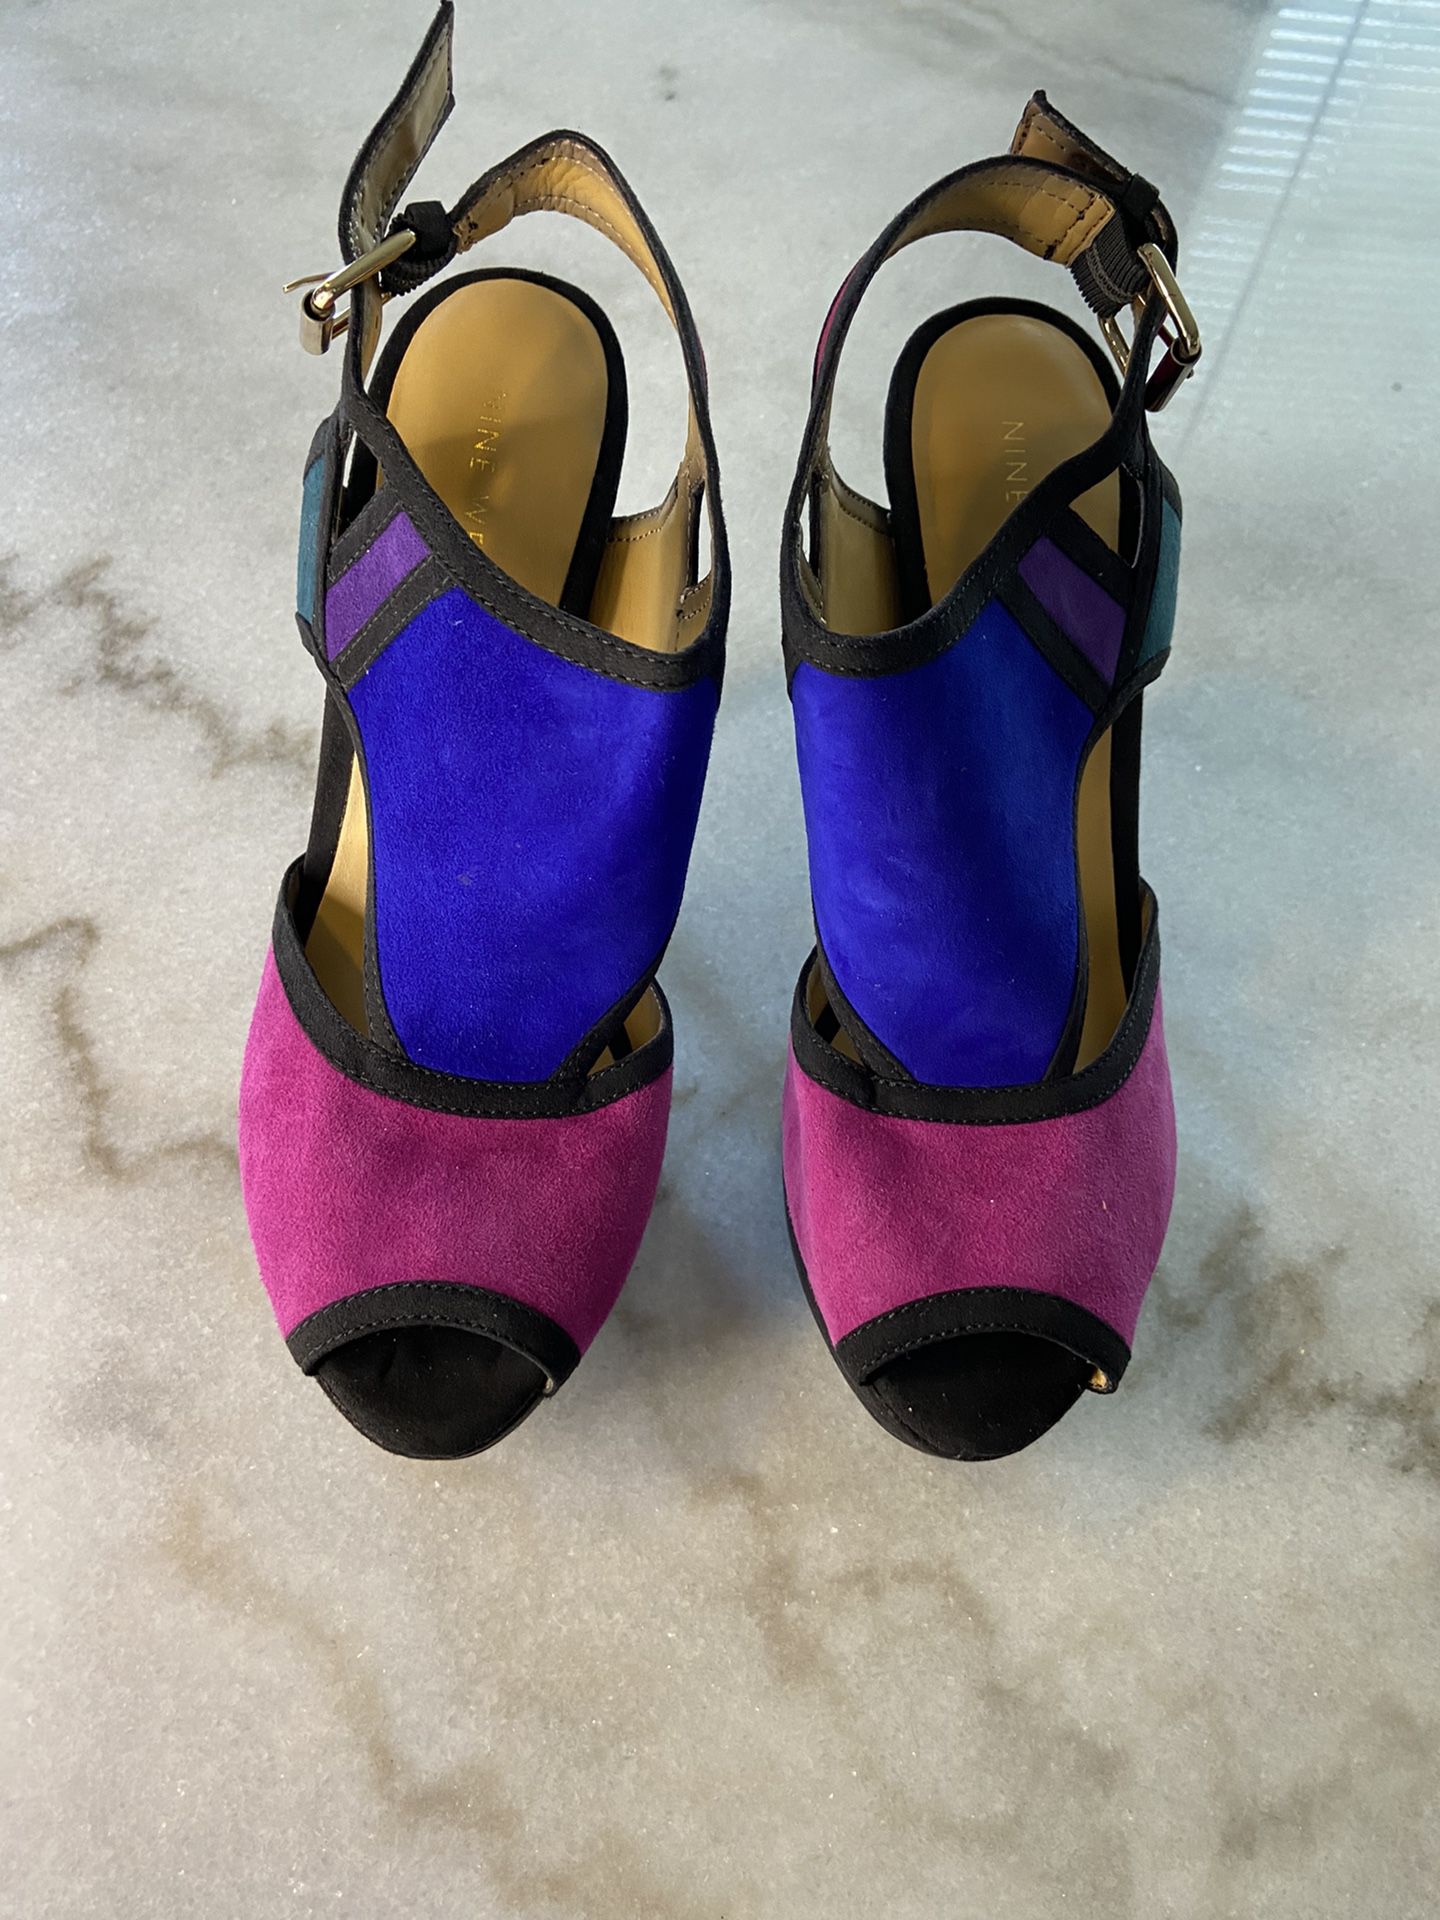 Nine West suede color block heels heels size 8